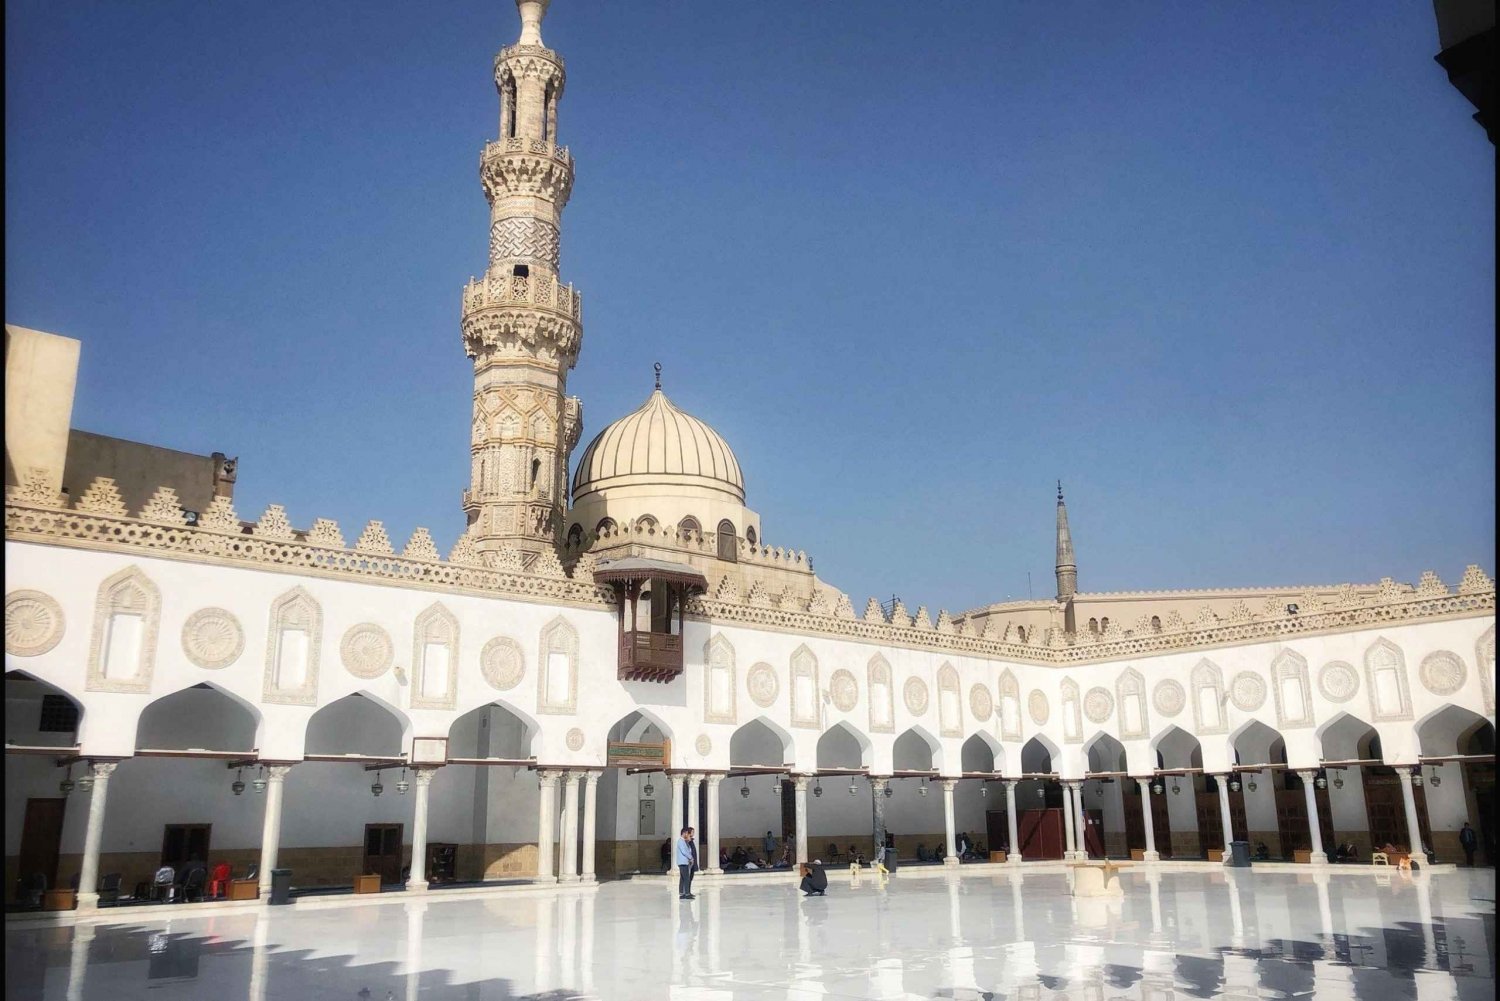 Religietour naar islamitische en koptische bezienswaardigheden in Caïro